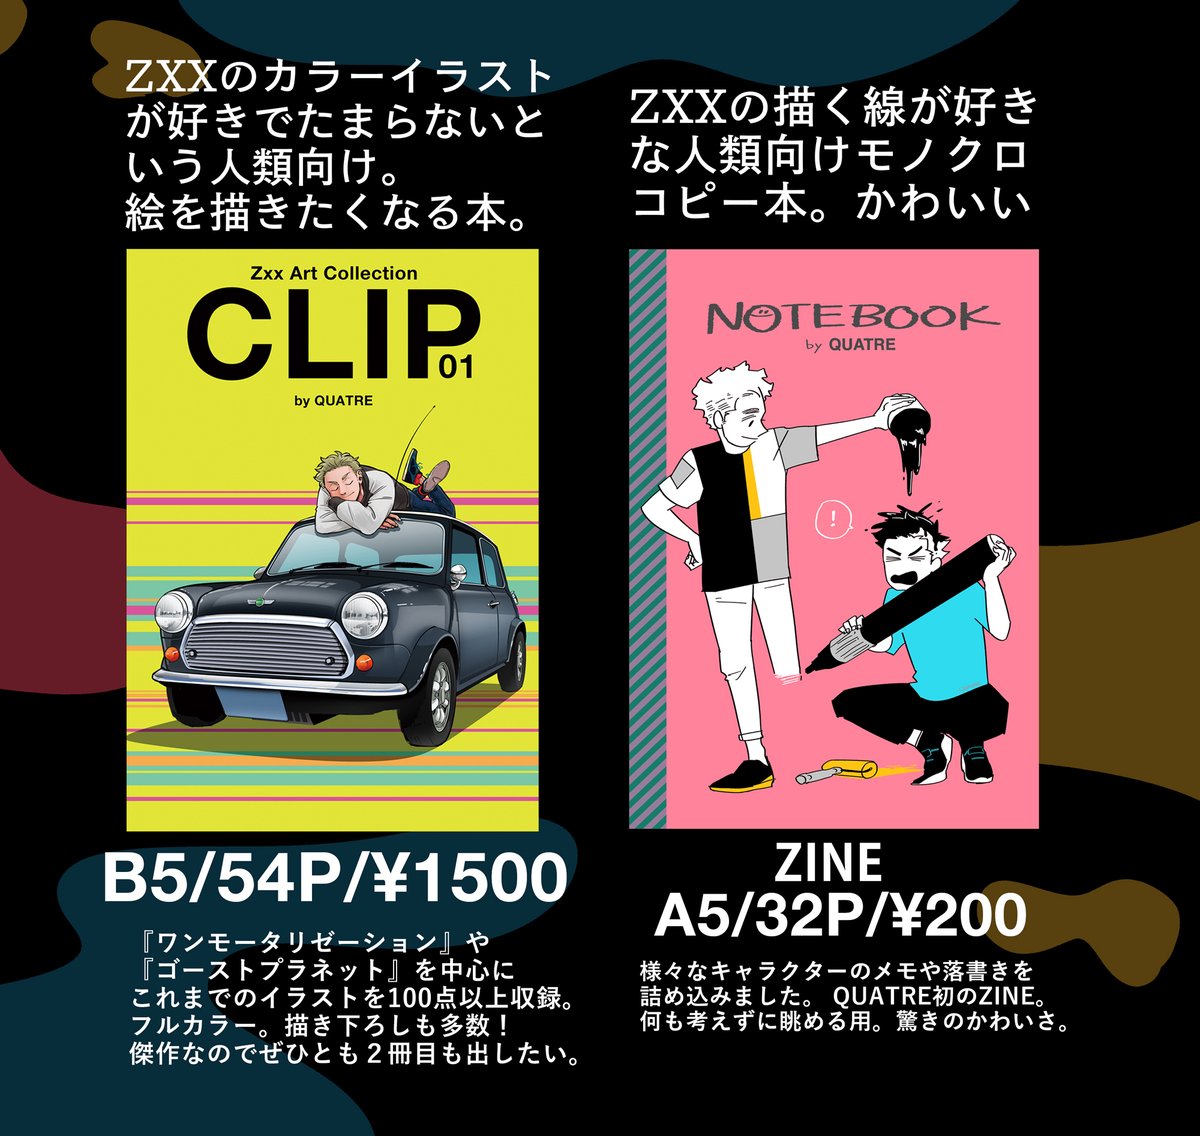 明日ですね!TOKYO Fes Aug 2023 「擬人化王国」にスペース出てます。新刊は久しぶりの番外編… ほんのり重い話好きにおすすめな一冊です。リクエストからキャラクター選出して描いた2p漫画(無料配布)もあります #擬人化王国28 #ワンモタ #ワンモータリゼーション #擬人化 #自動車メーカー擬人化 